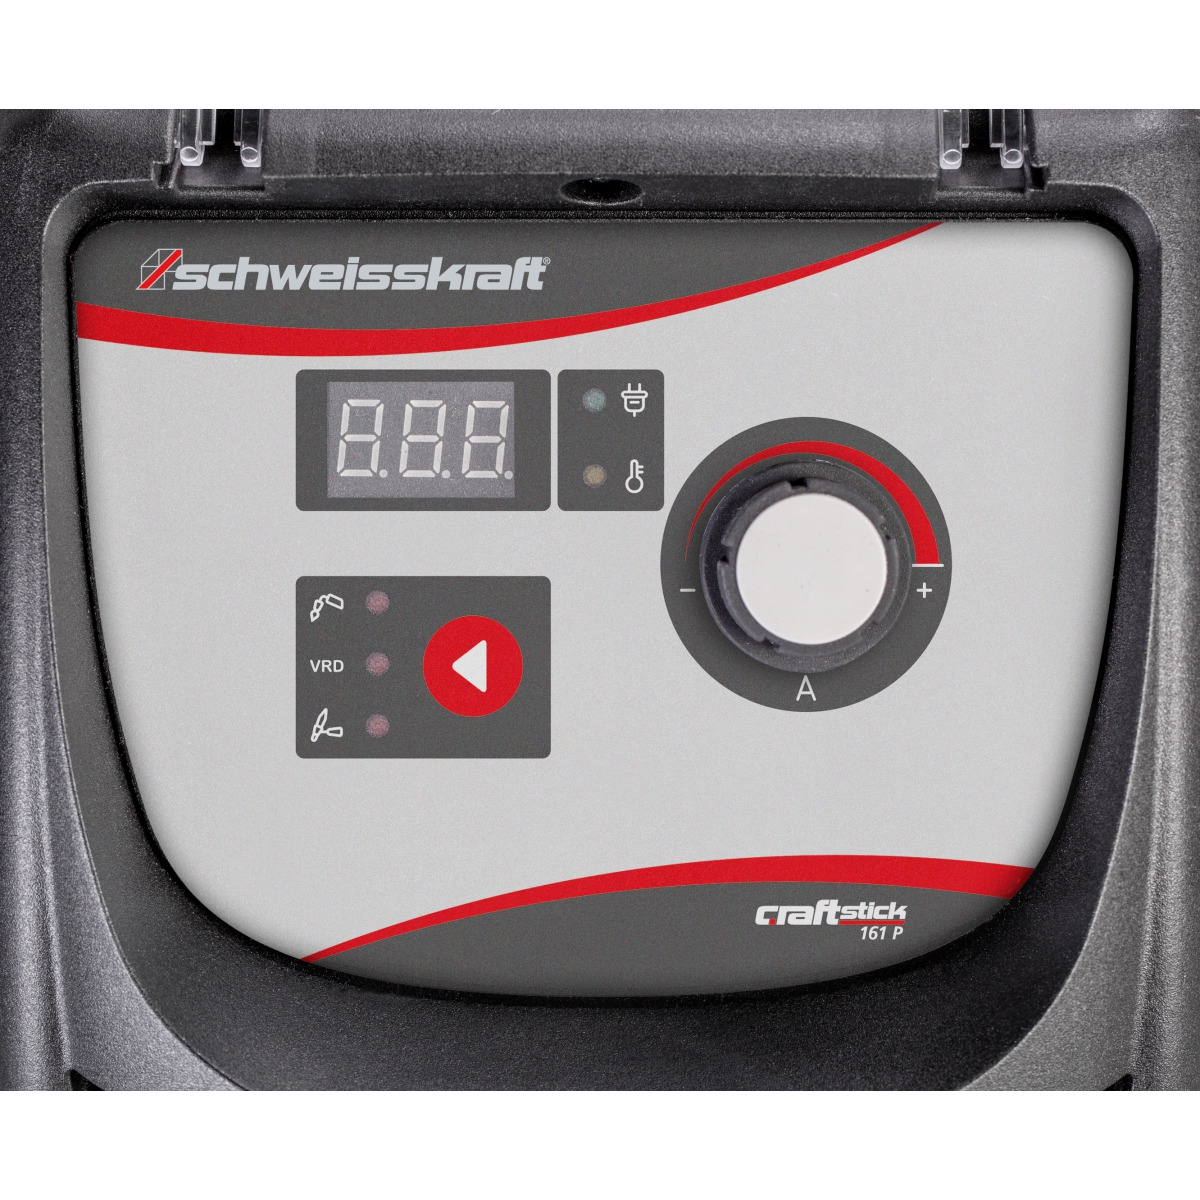 Schweisskraft Elektrodeninverter CRAFT-STICK 161 P | 230 V